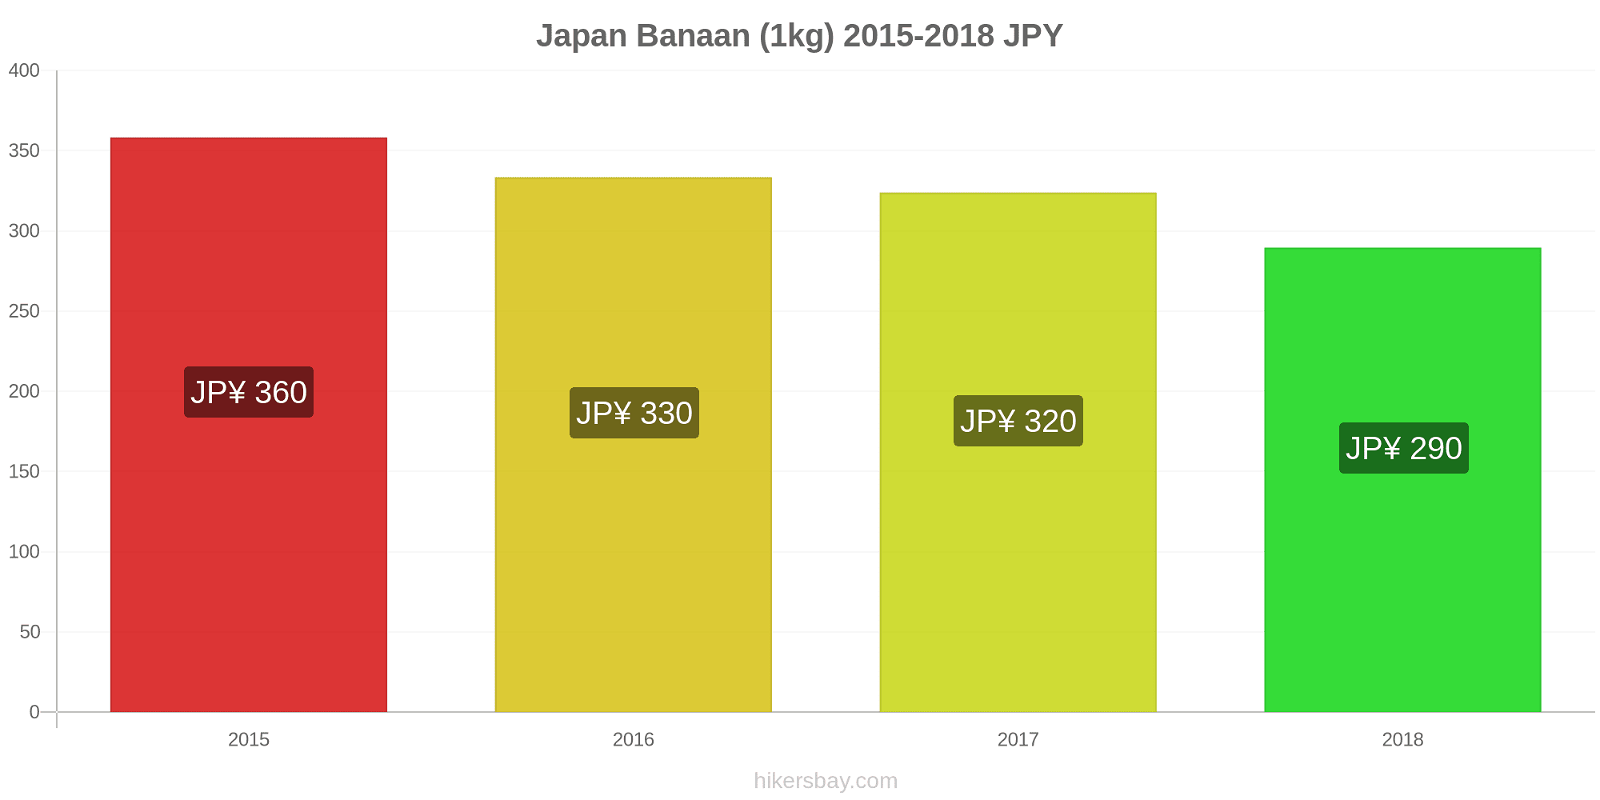 Japan prijswijzigingen Bananen (1kg) hikersbay.com